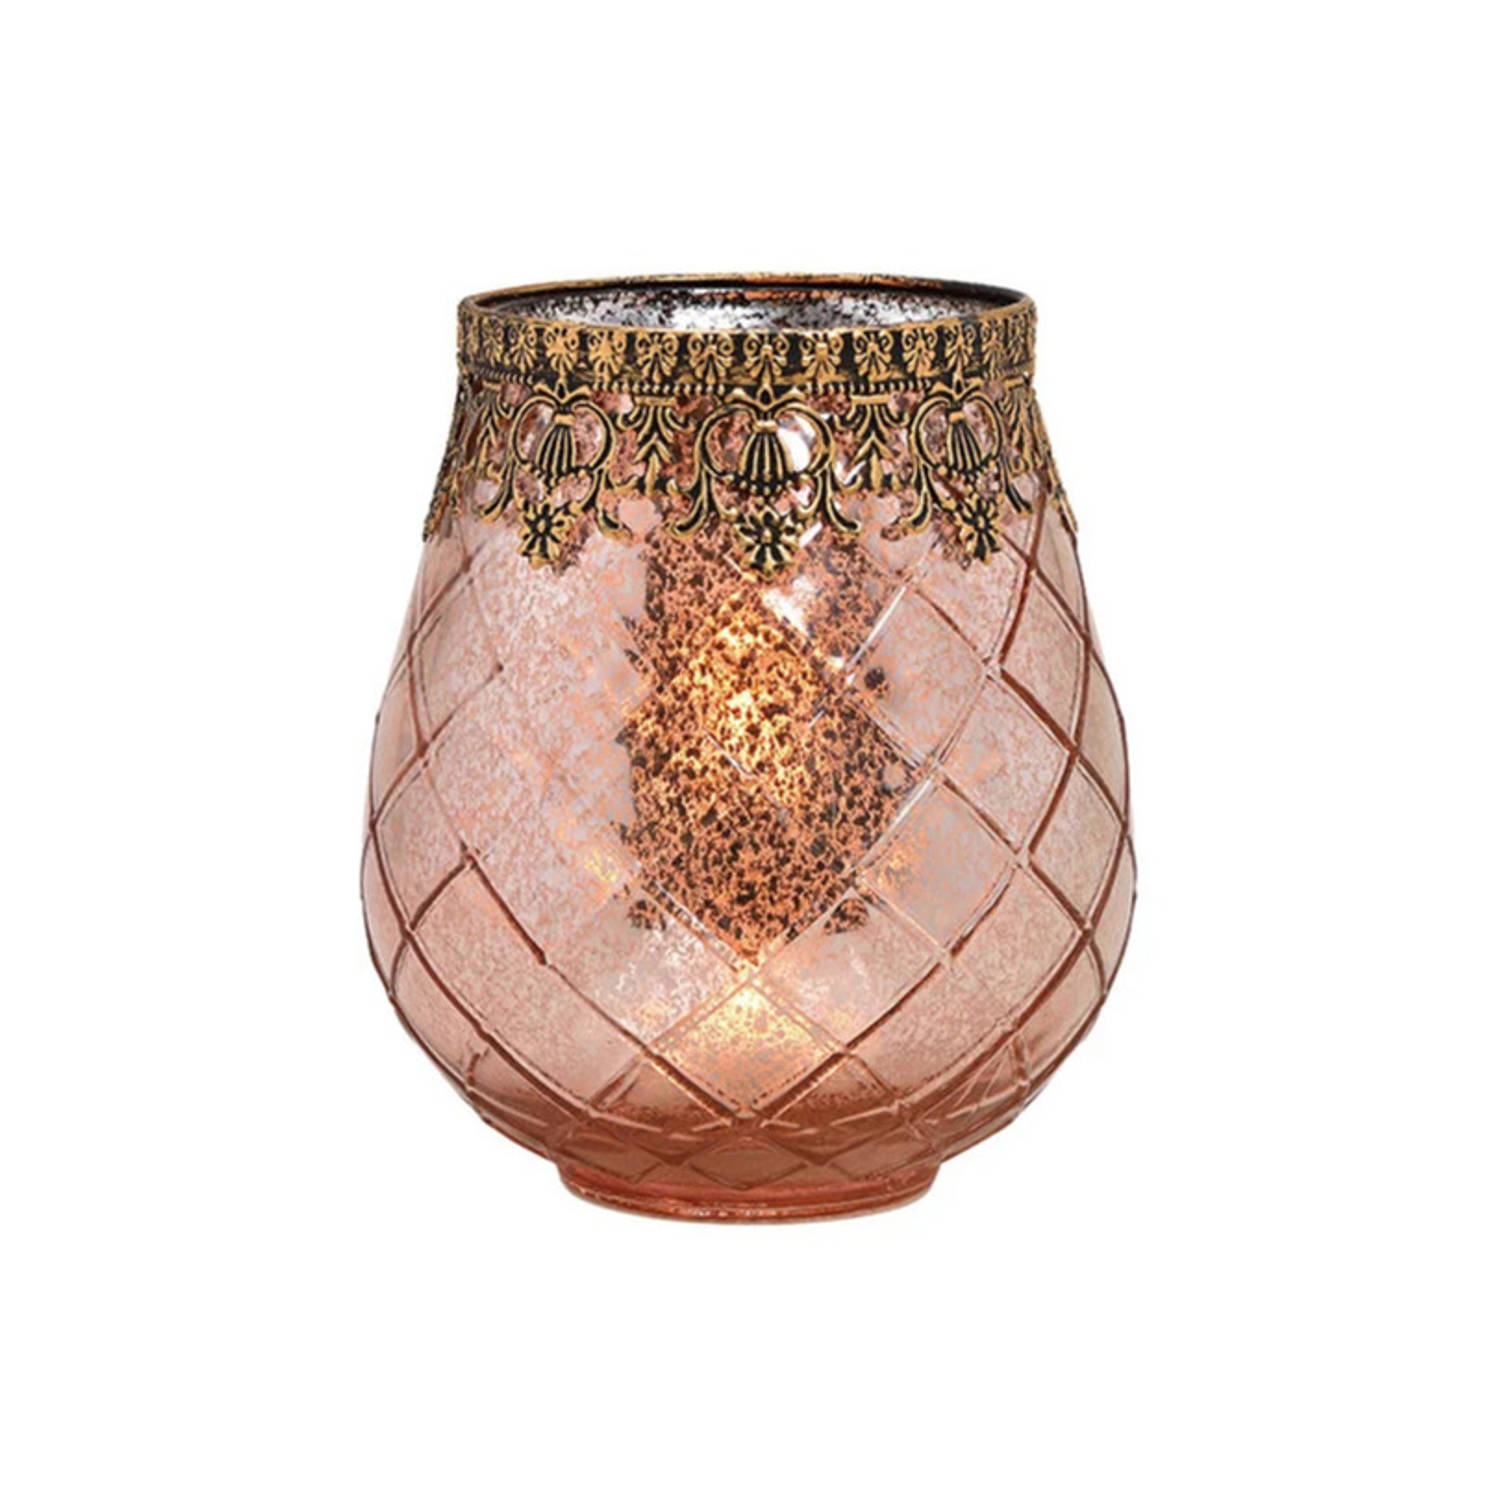 Bellatio Design Glazen Design Windlicht/kaarsenhouder In De Kleur Rose Goud Met Formaat 16 X 18 X 16 Cm - Voor Waxinelichtjes - Roze